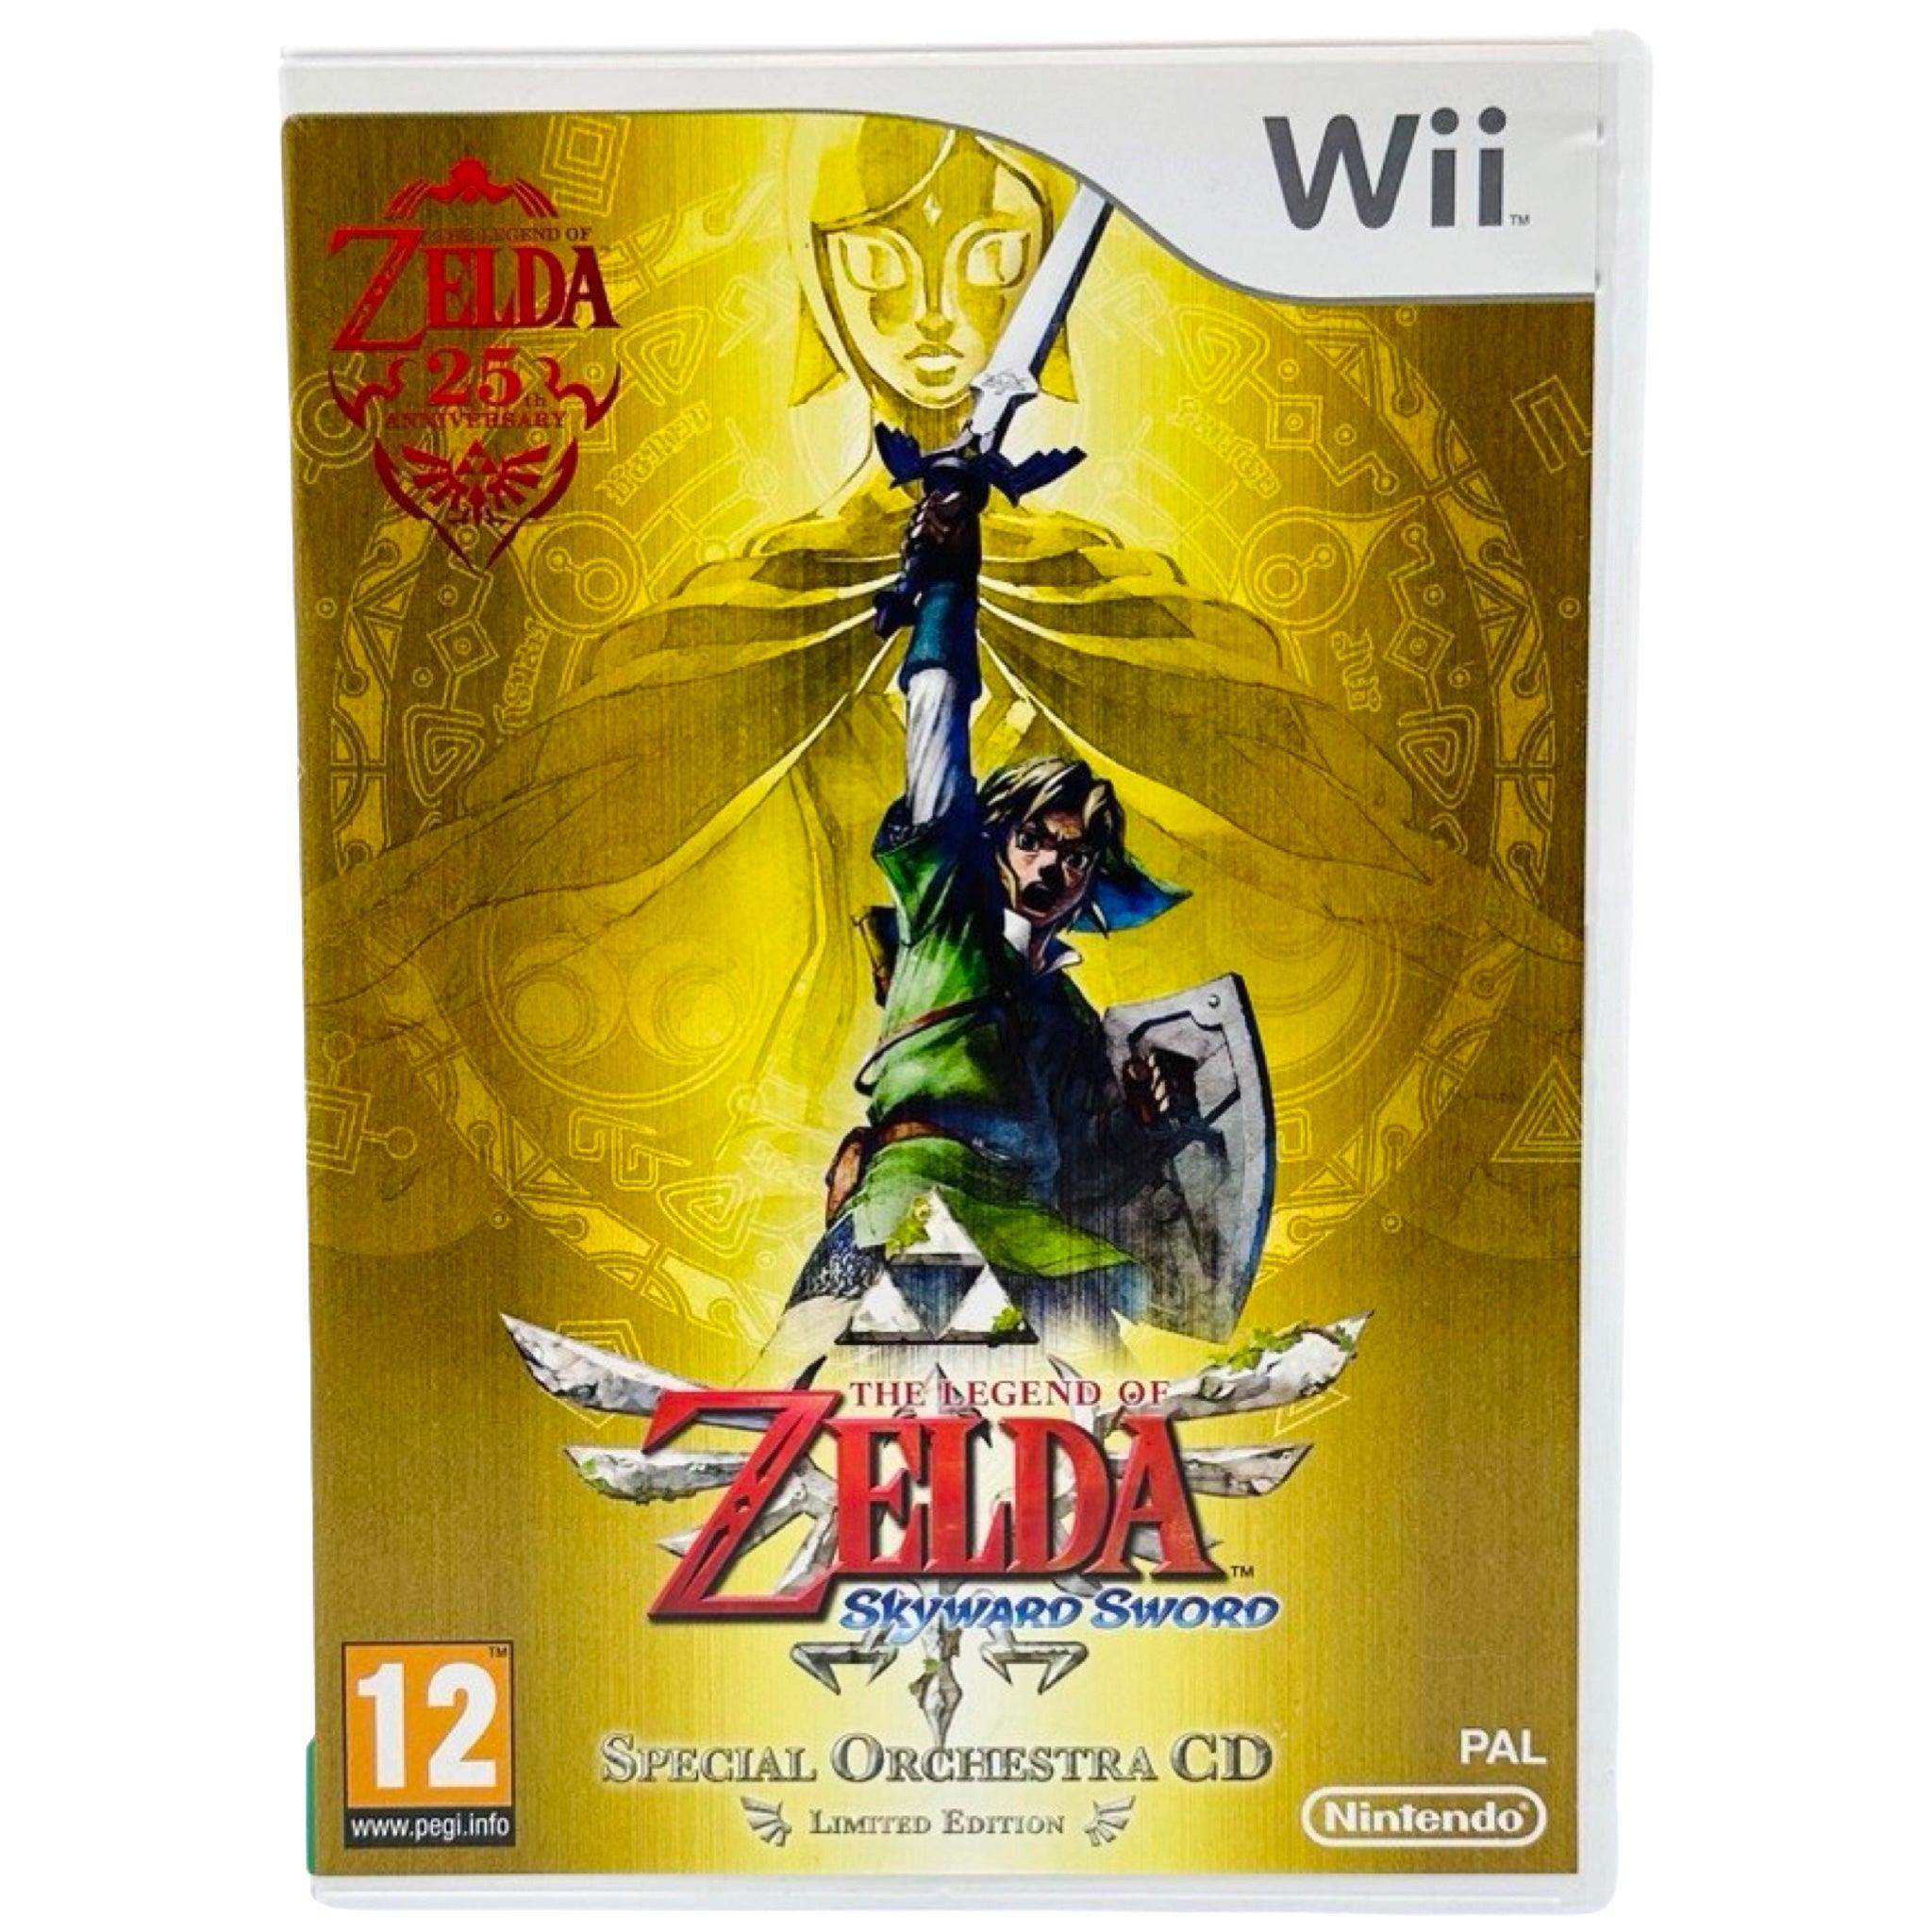 Wii: The Legend of Zelda: Skyward Sword - RetroGaming.no